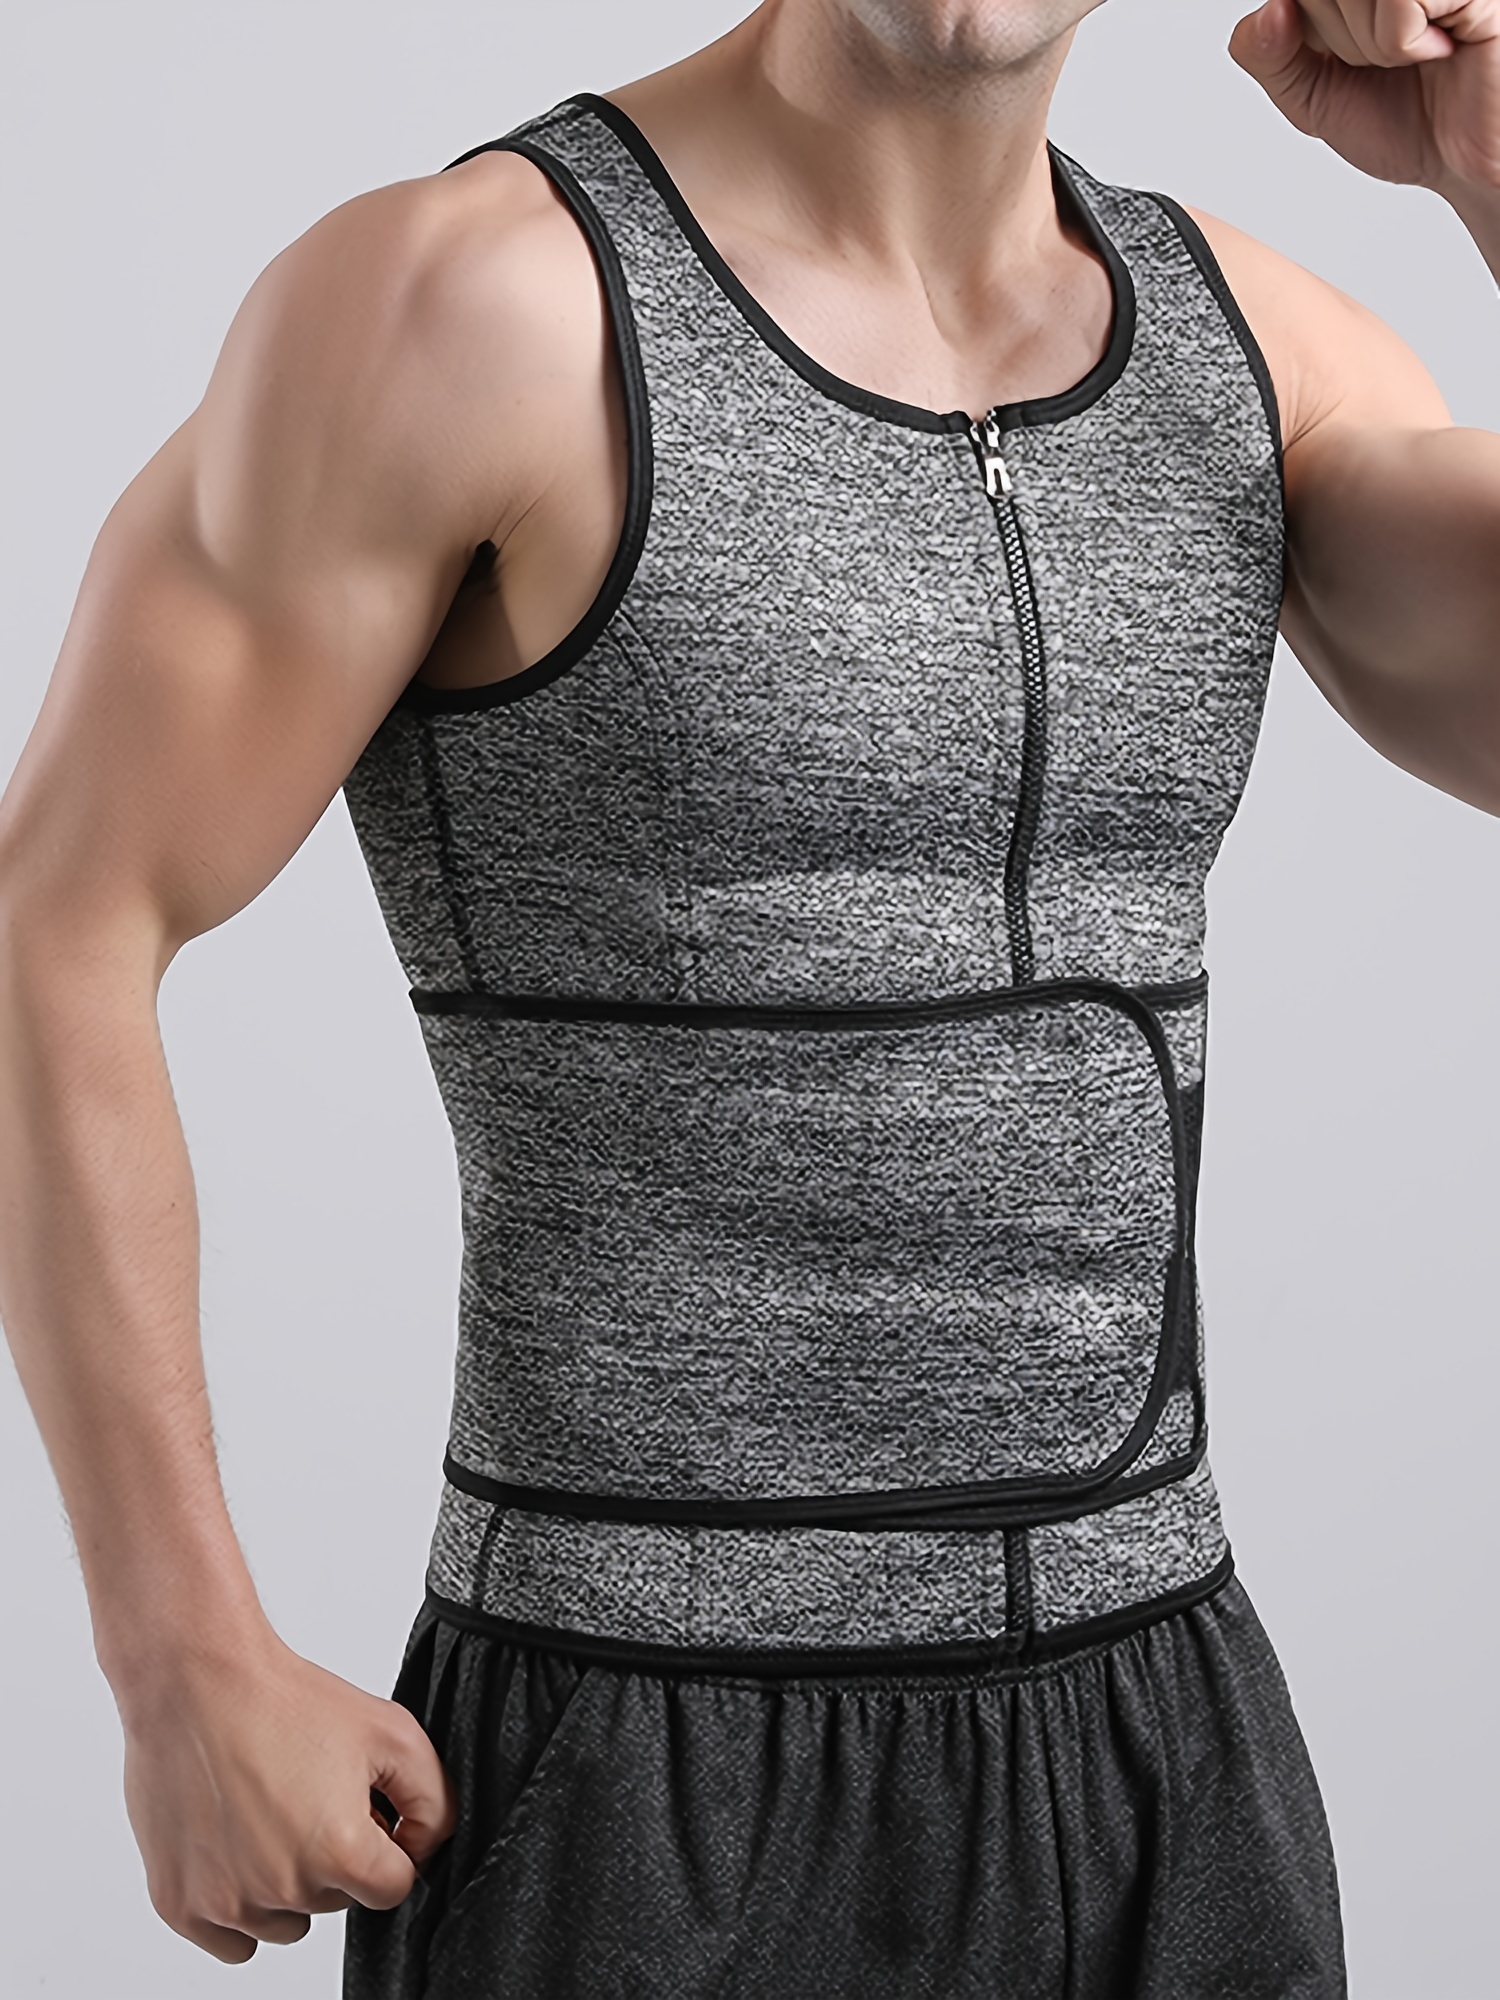 Men's Sweat resistant Body Shaper Vest Reinforced Waist - Temu